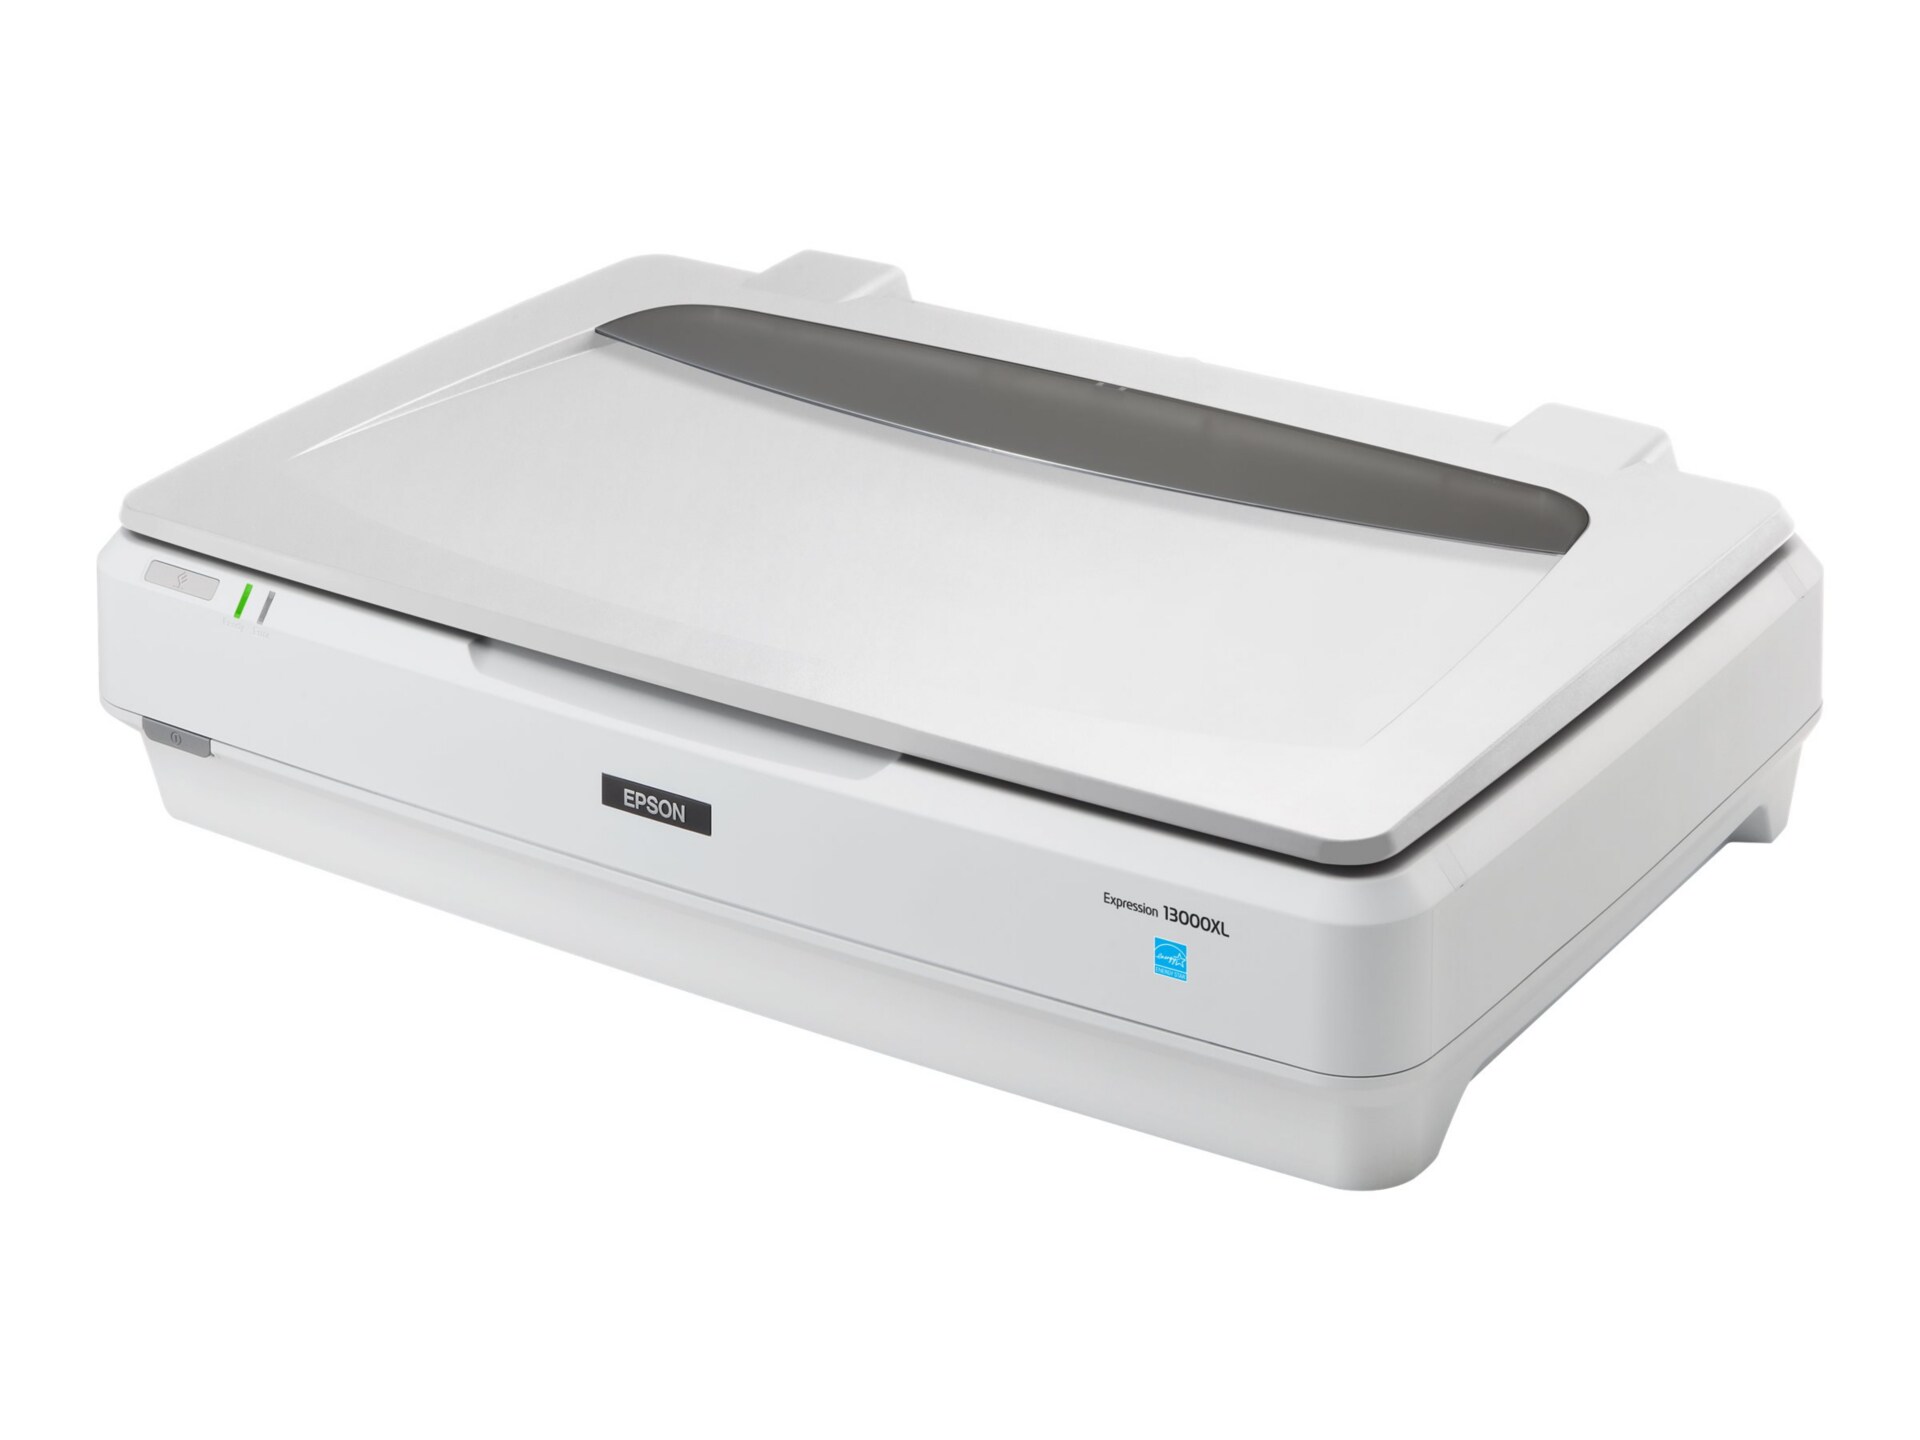 Epson Expression 13000XL - scanner à plat - modèle bureau - USB 2.0